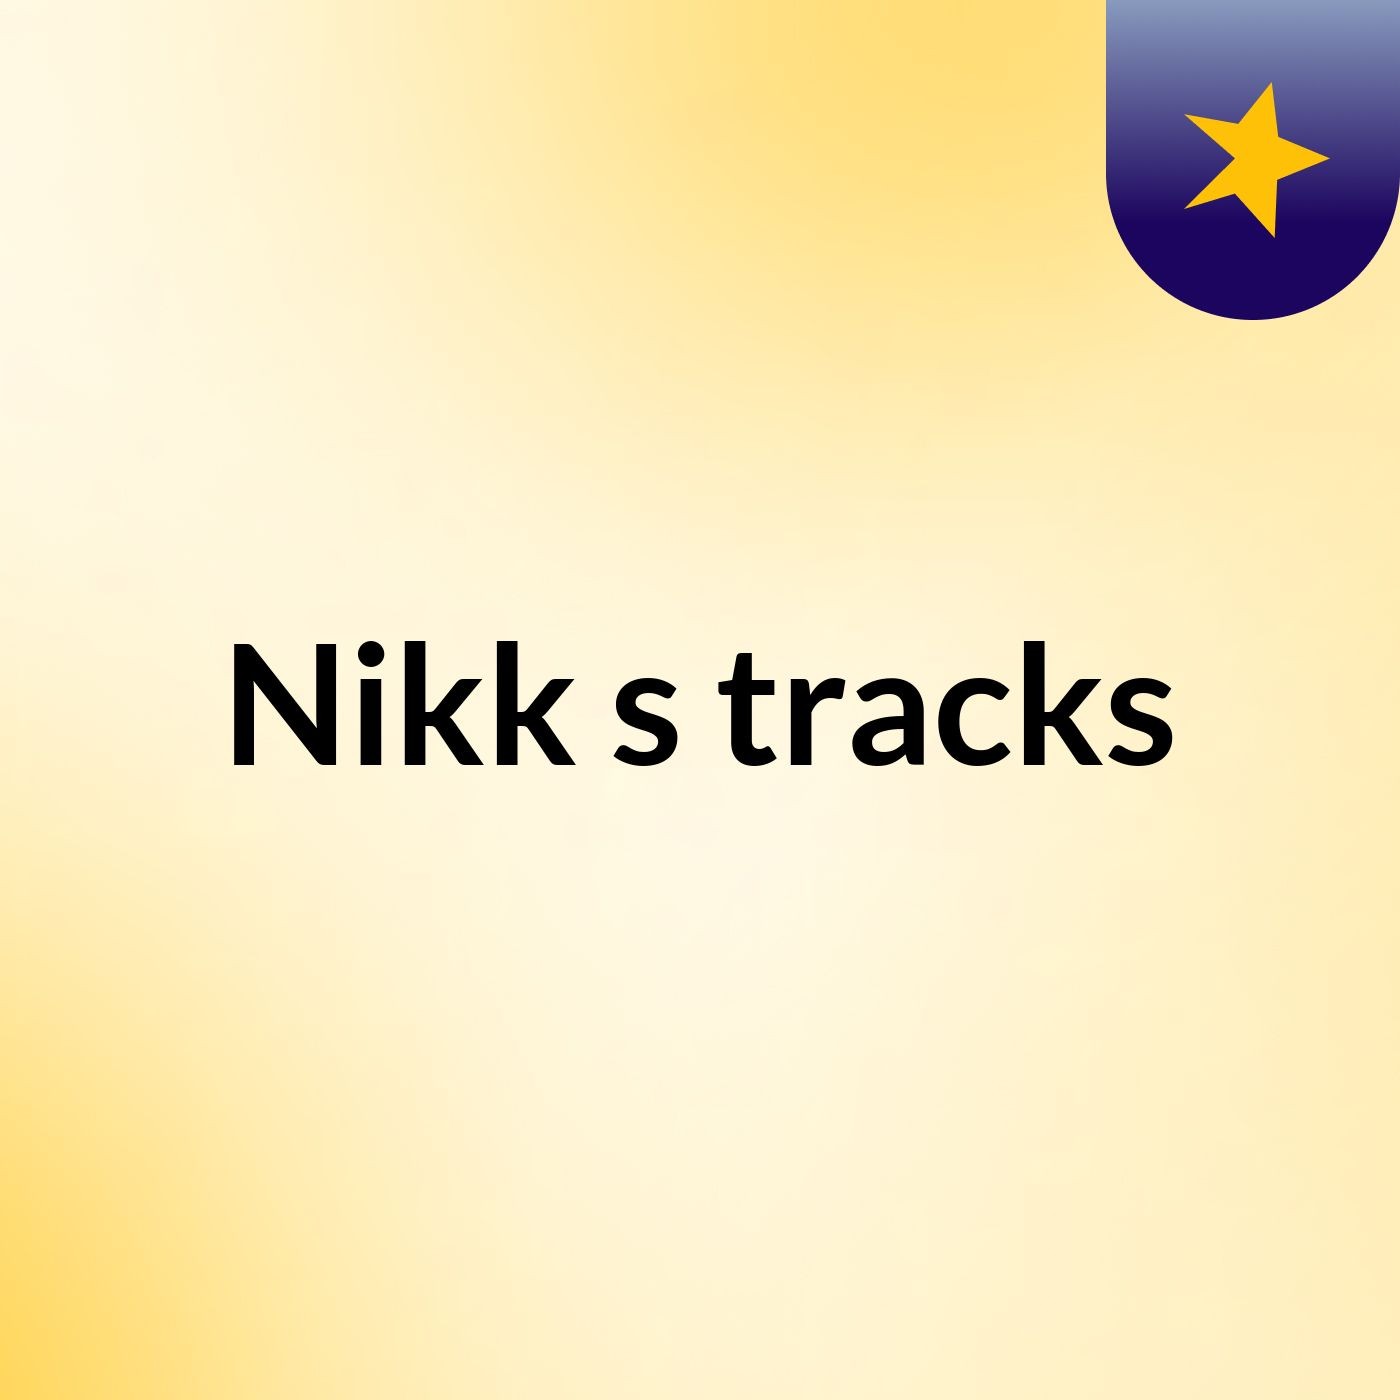 Nikk's tracks